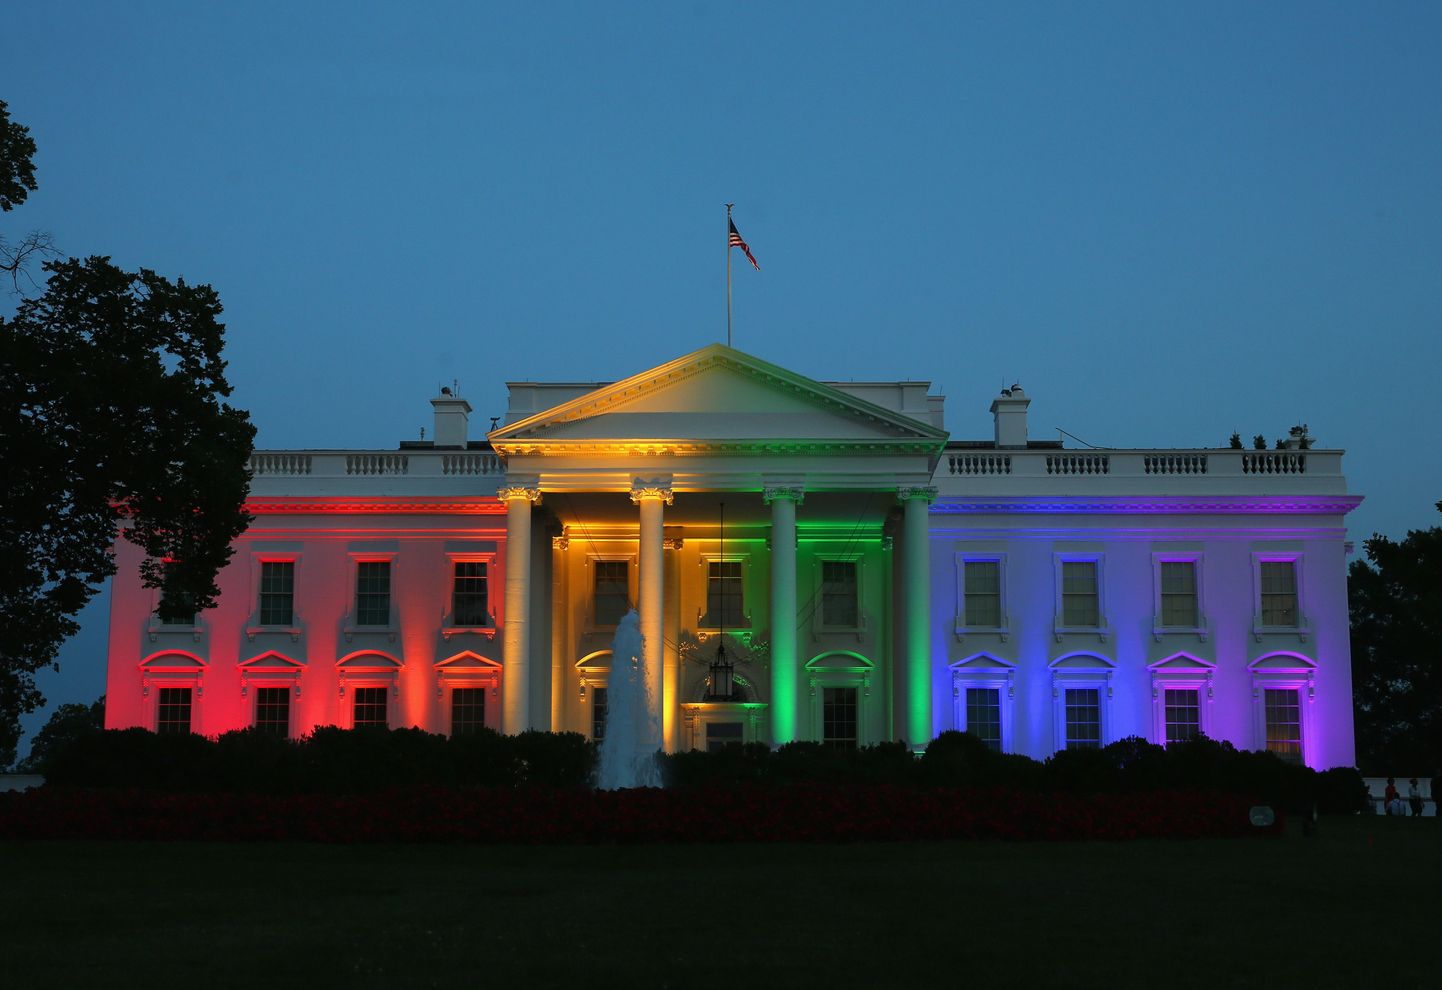 Vahetult pärast seda, kui USA ülemkohus kehtestas samast soost inimeste paaripanemise kohustuse kõigile osariikidele, muutus Valge Maja värviliseks.